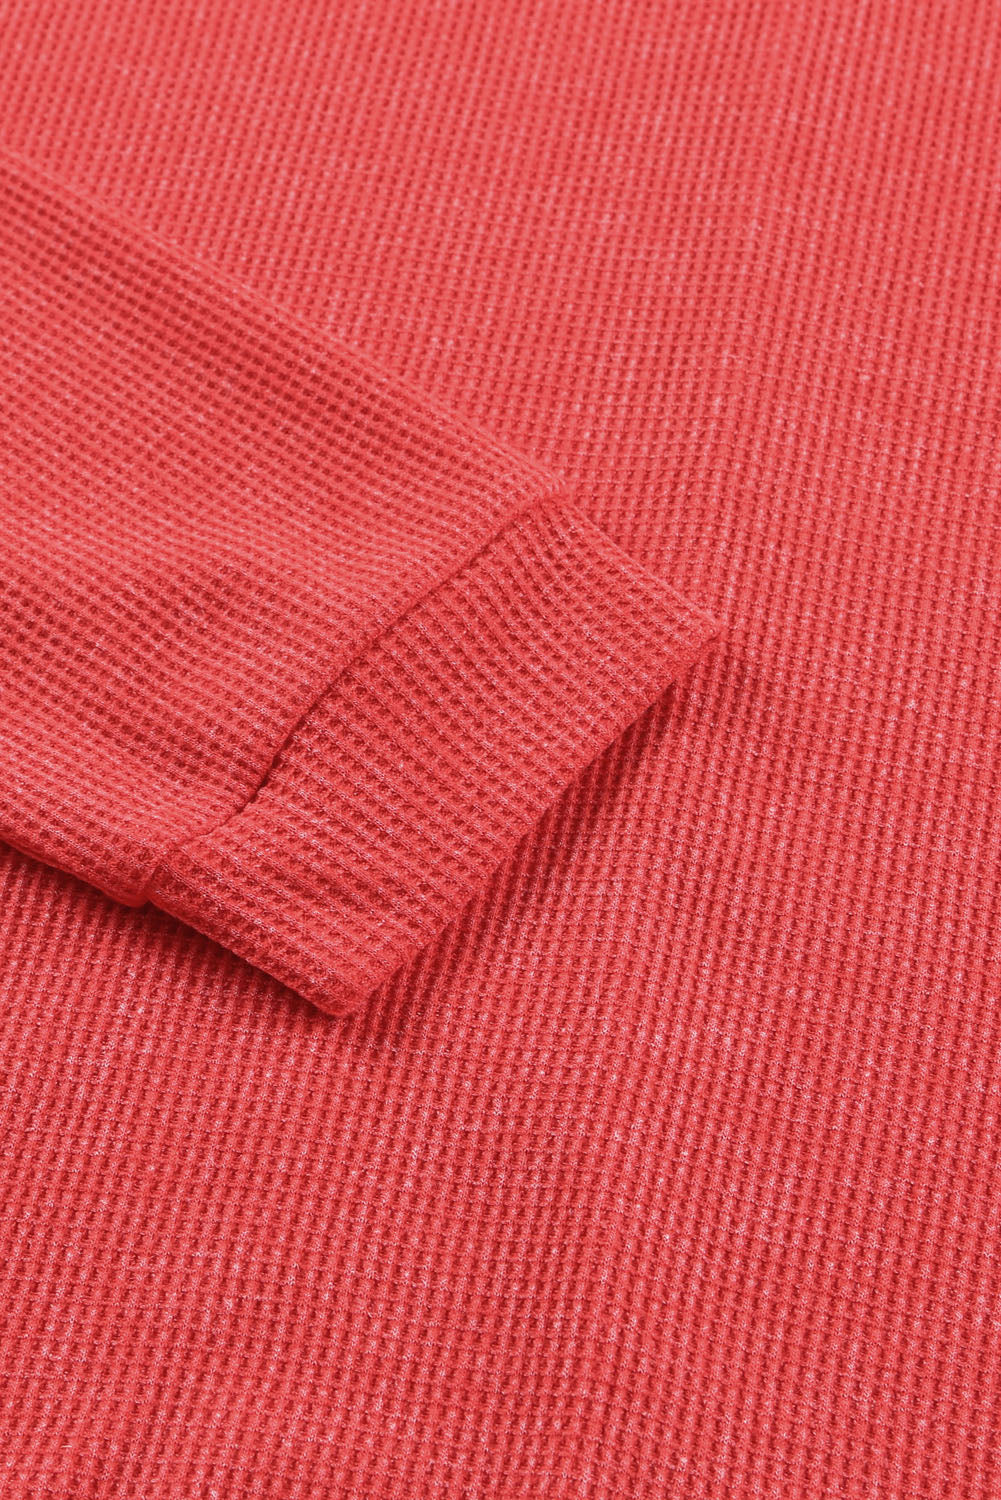 Haut pull gris en tricot gaufré avec fente latérale